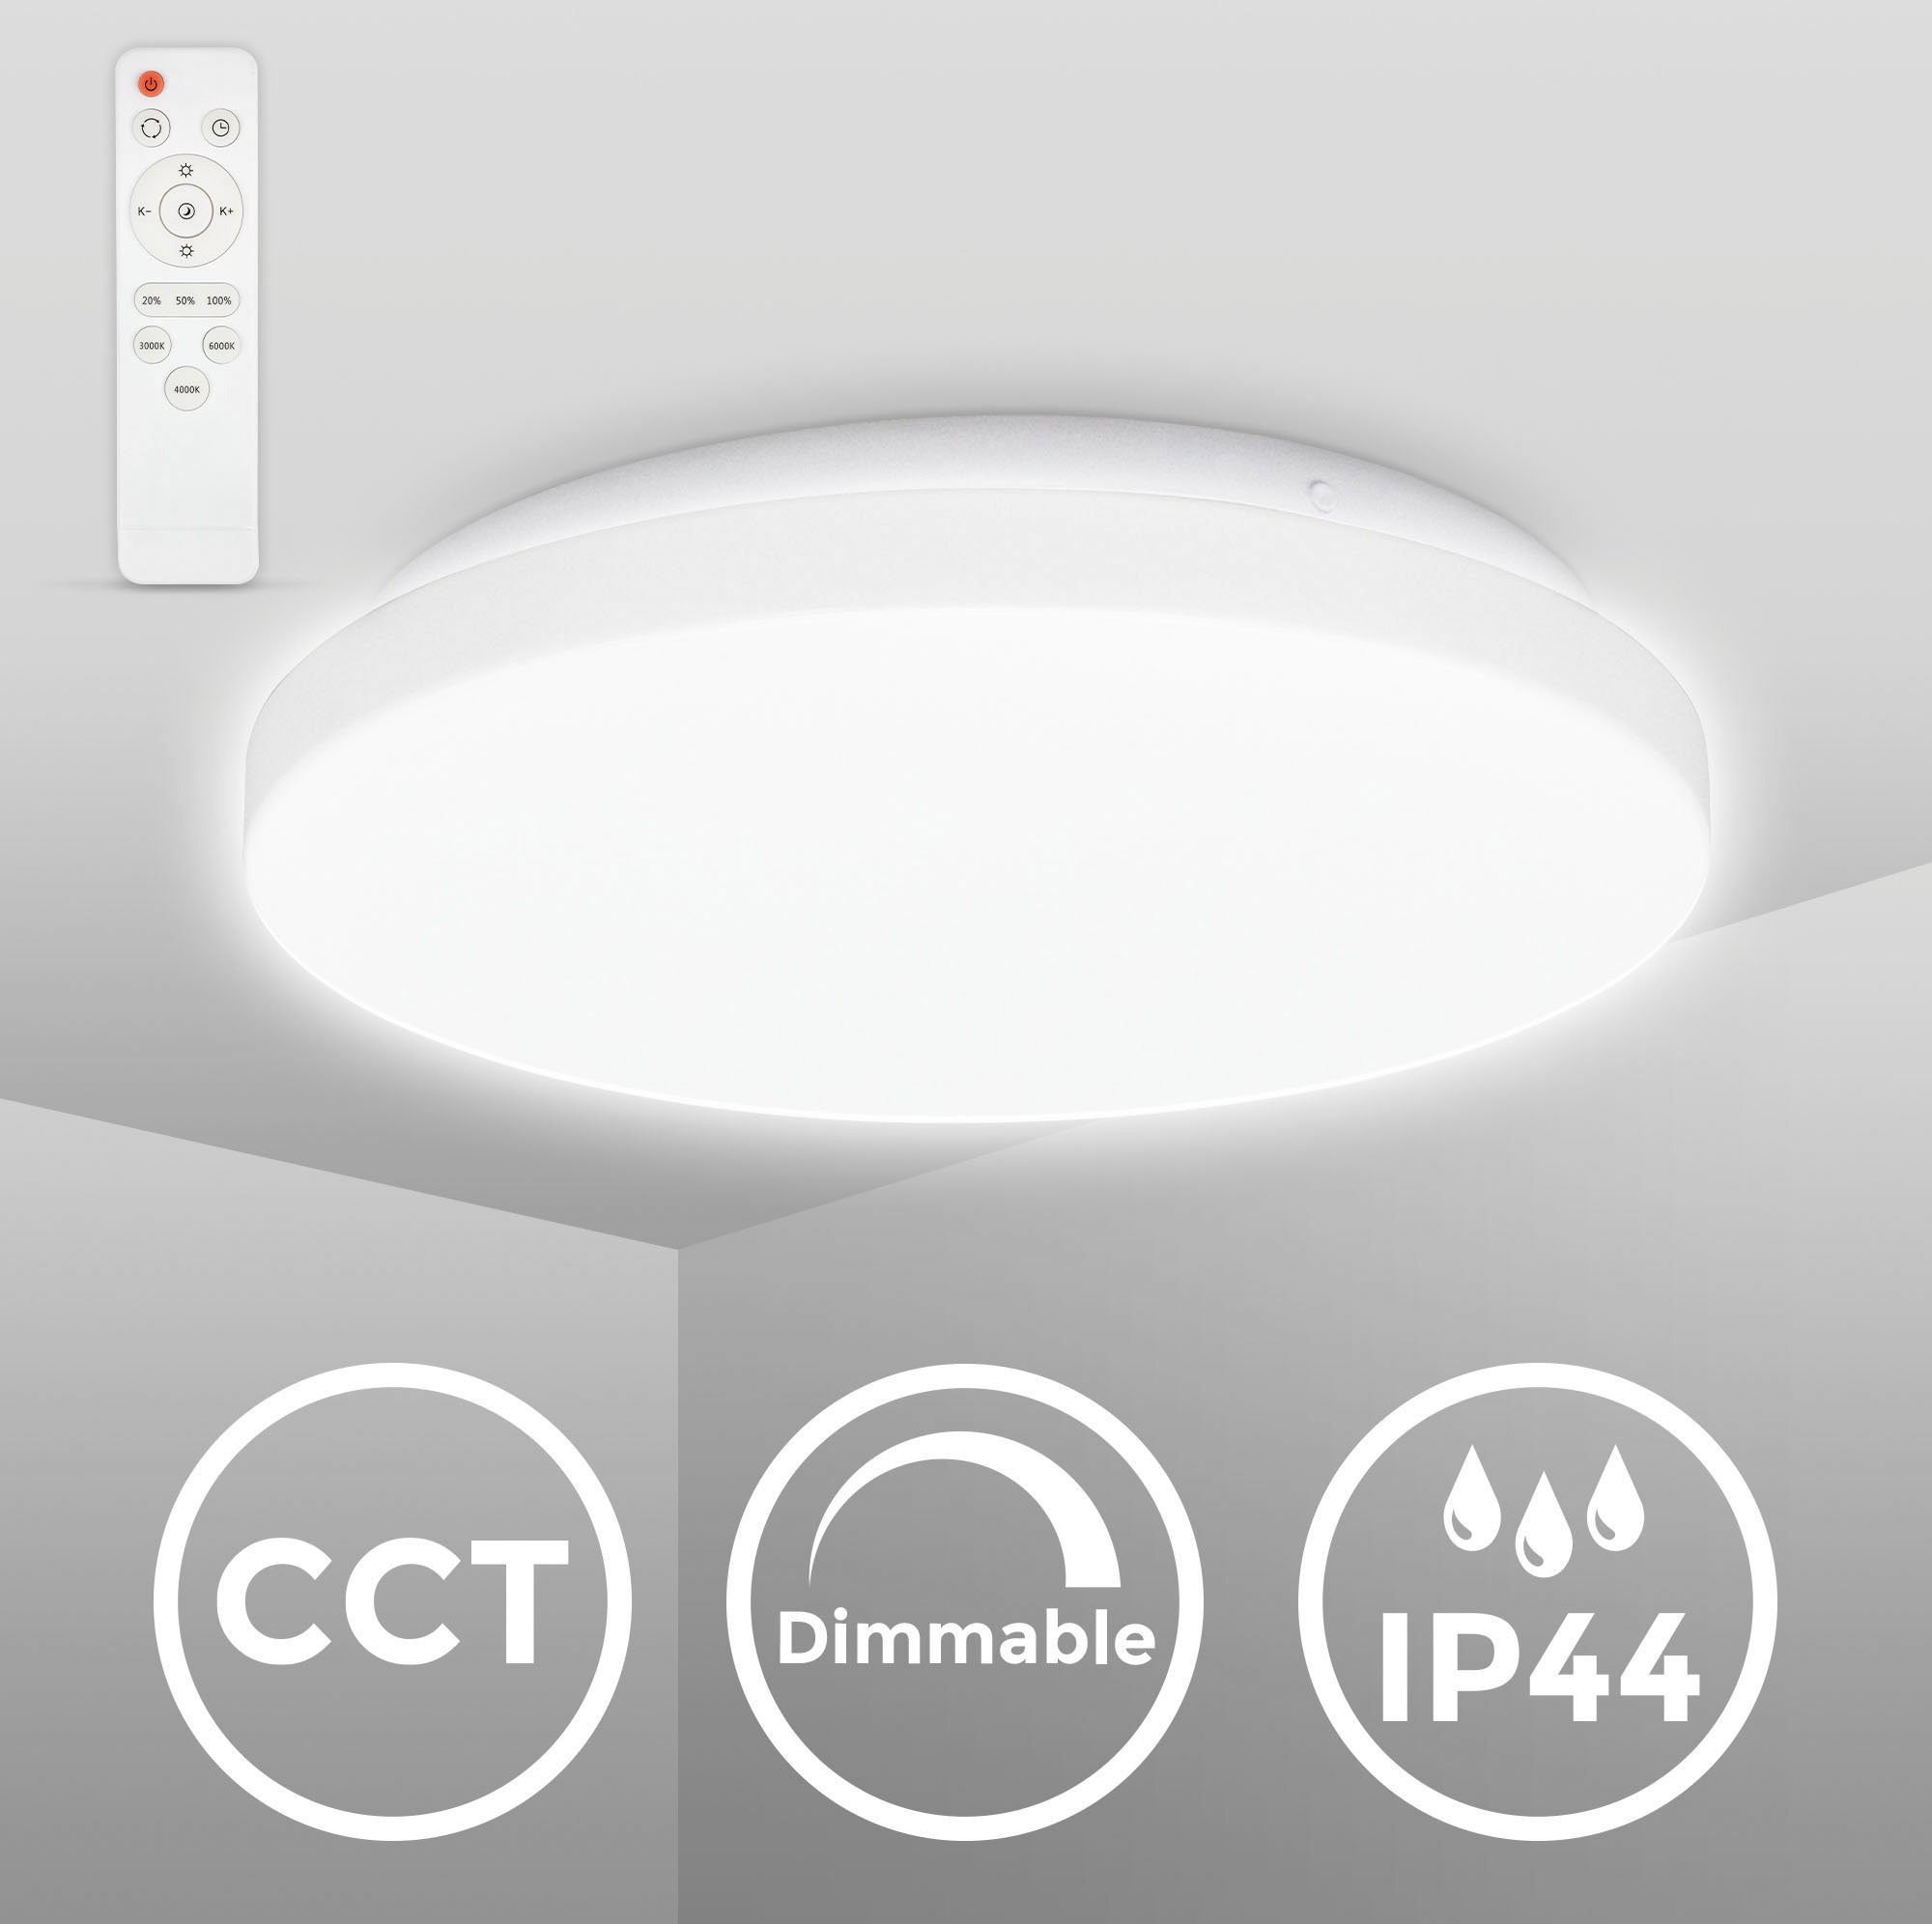 CCT über LED CCT-LED 12W Dimmbar, fest - BK_DL1526 (3000K-6500K) IP44, integriert, B.K.Licht mit Bad-Deckenlampe, LED Deckenleuchte Ø28,8cm, Fernbedienung, Fernbedienung, Badleuchte Farbtemperatursteuerung